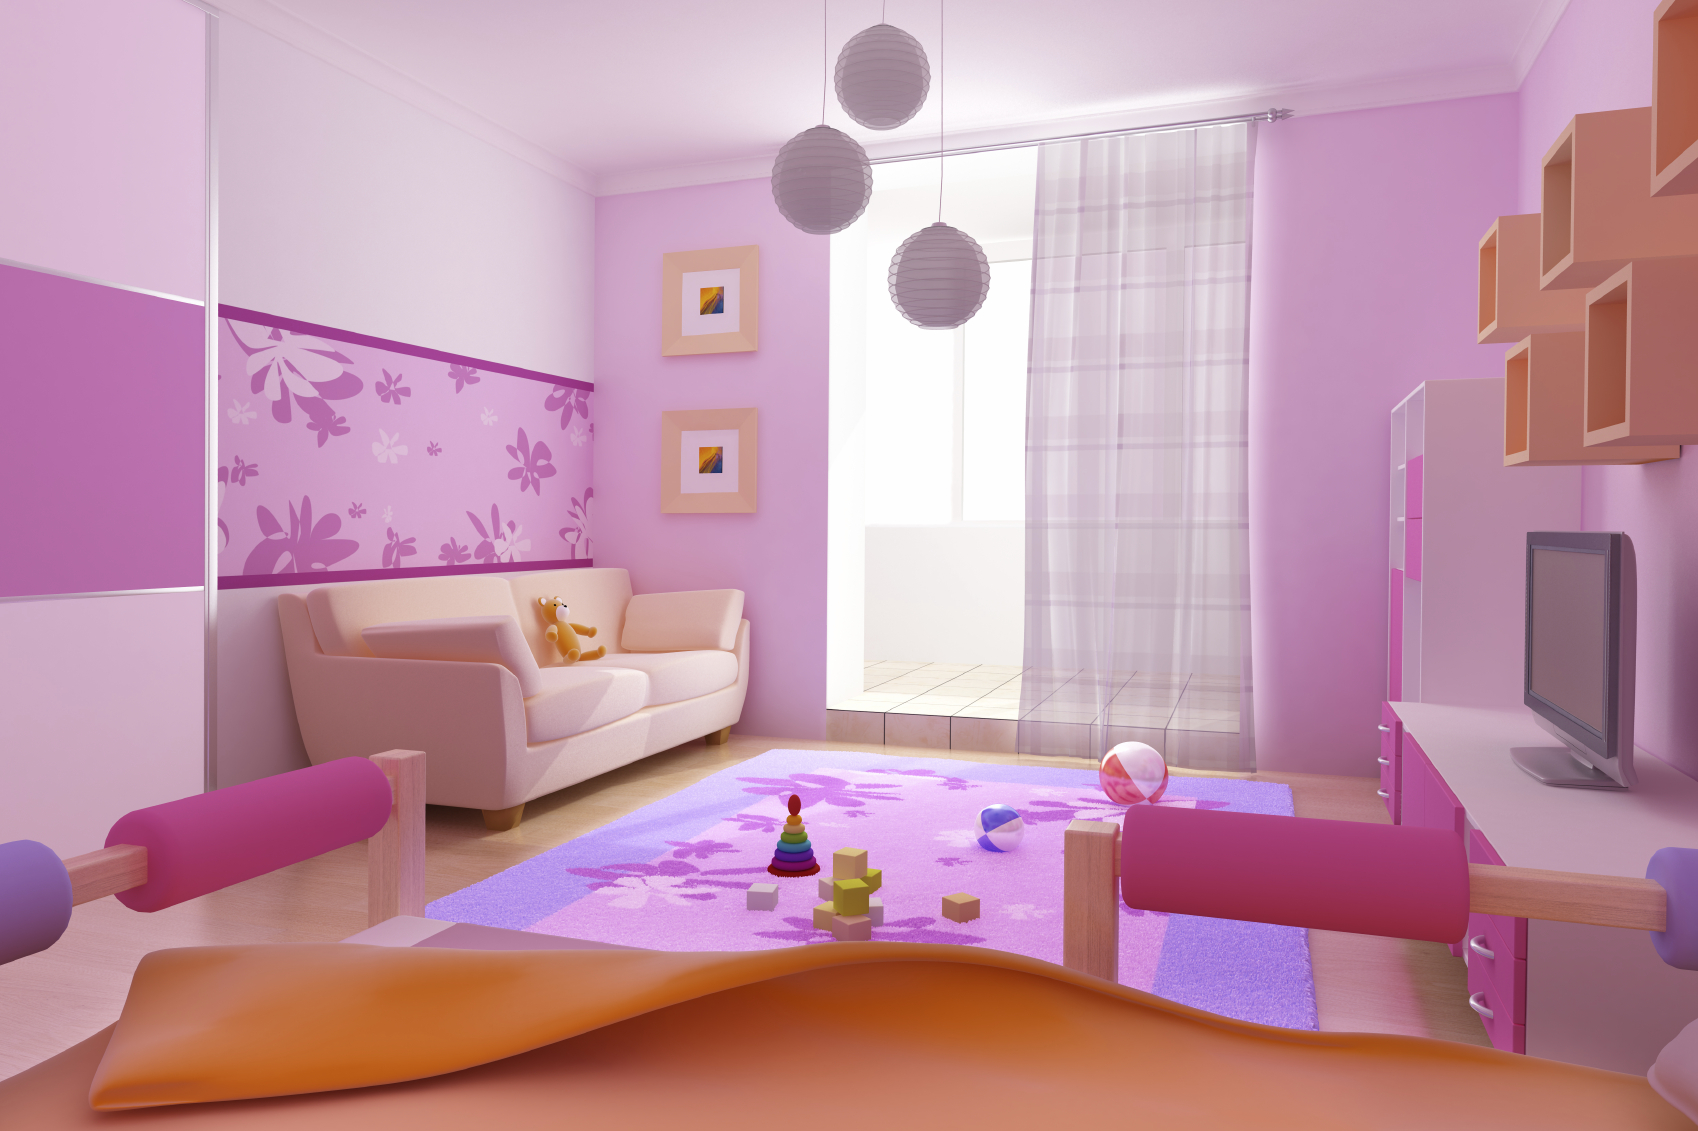 تصميم خلفية بألوان دافئة لغرفة طفل لصبي نشط وحديث